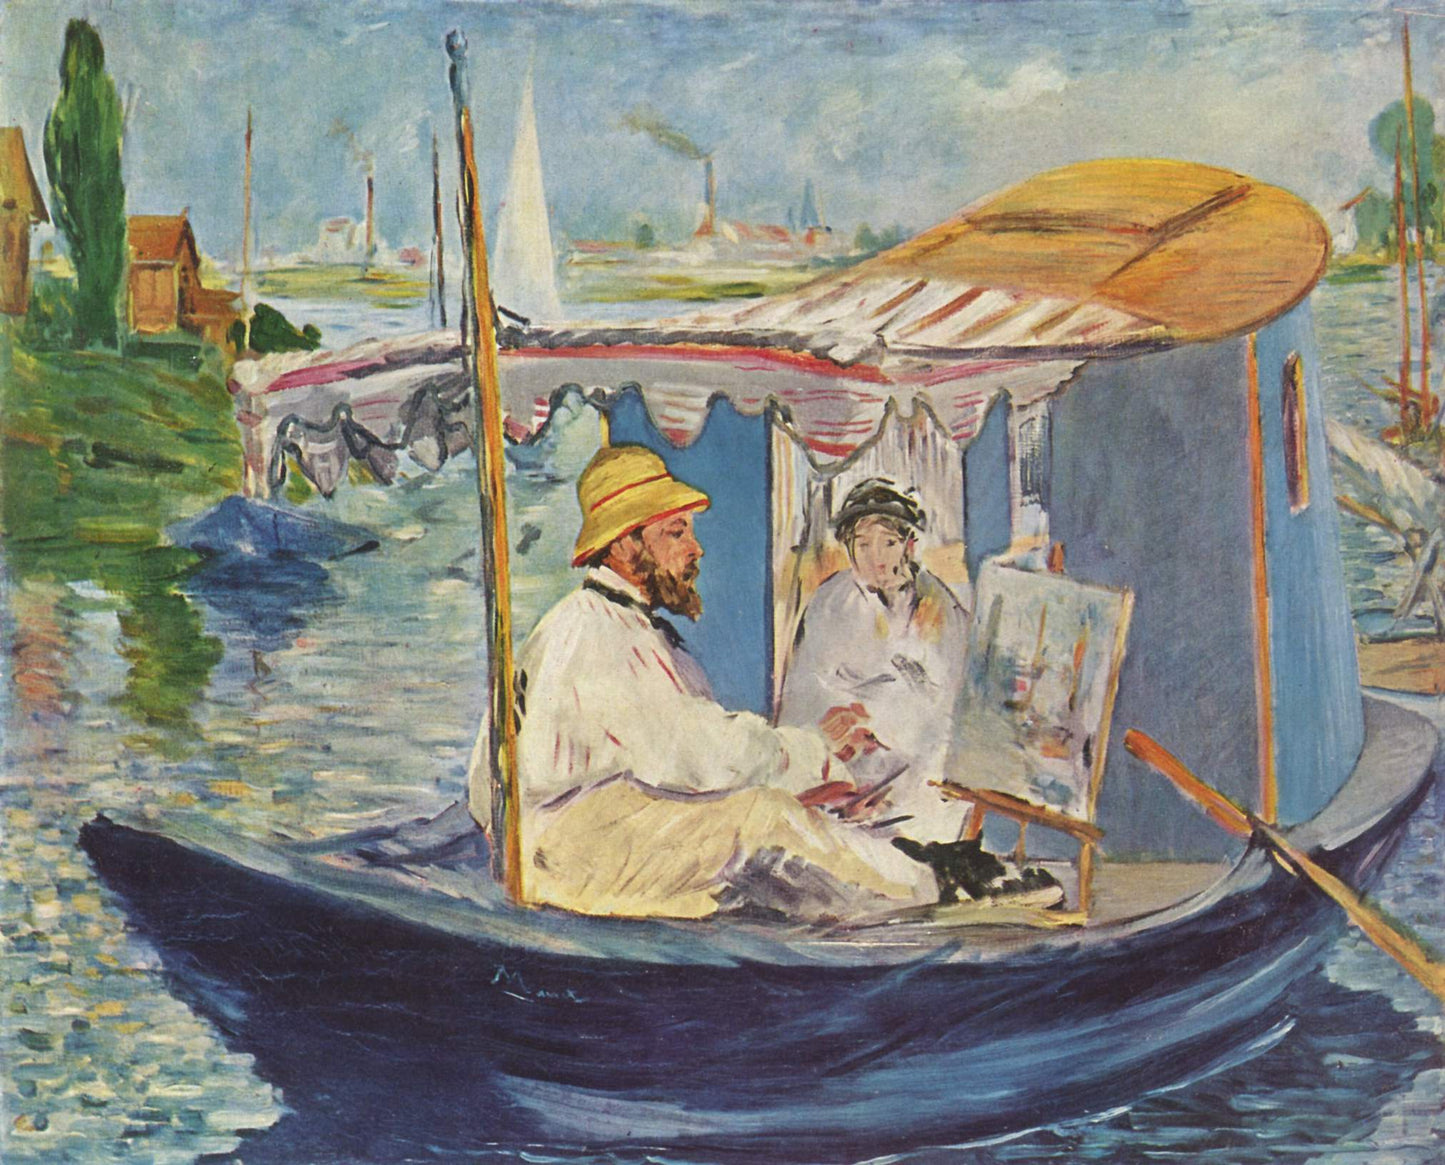 Claude Monet in his studio Argenteuil